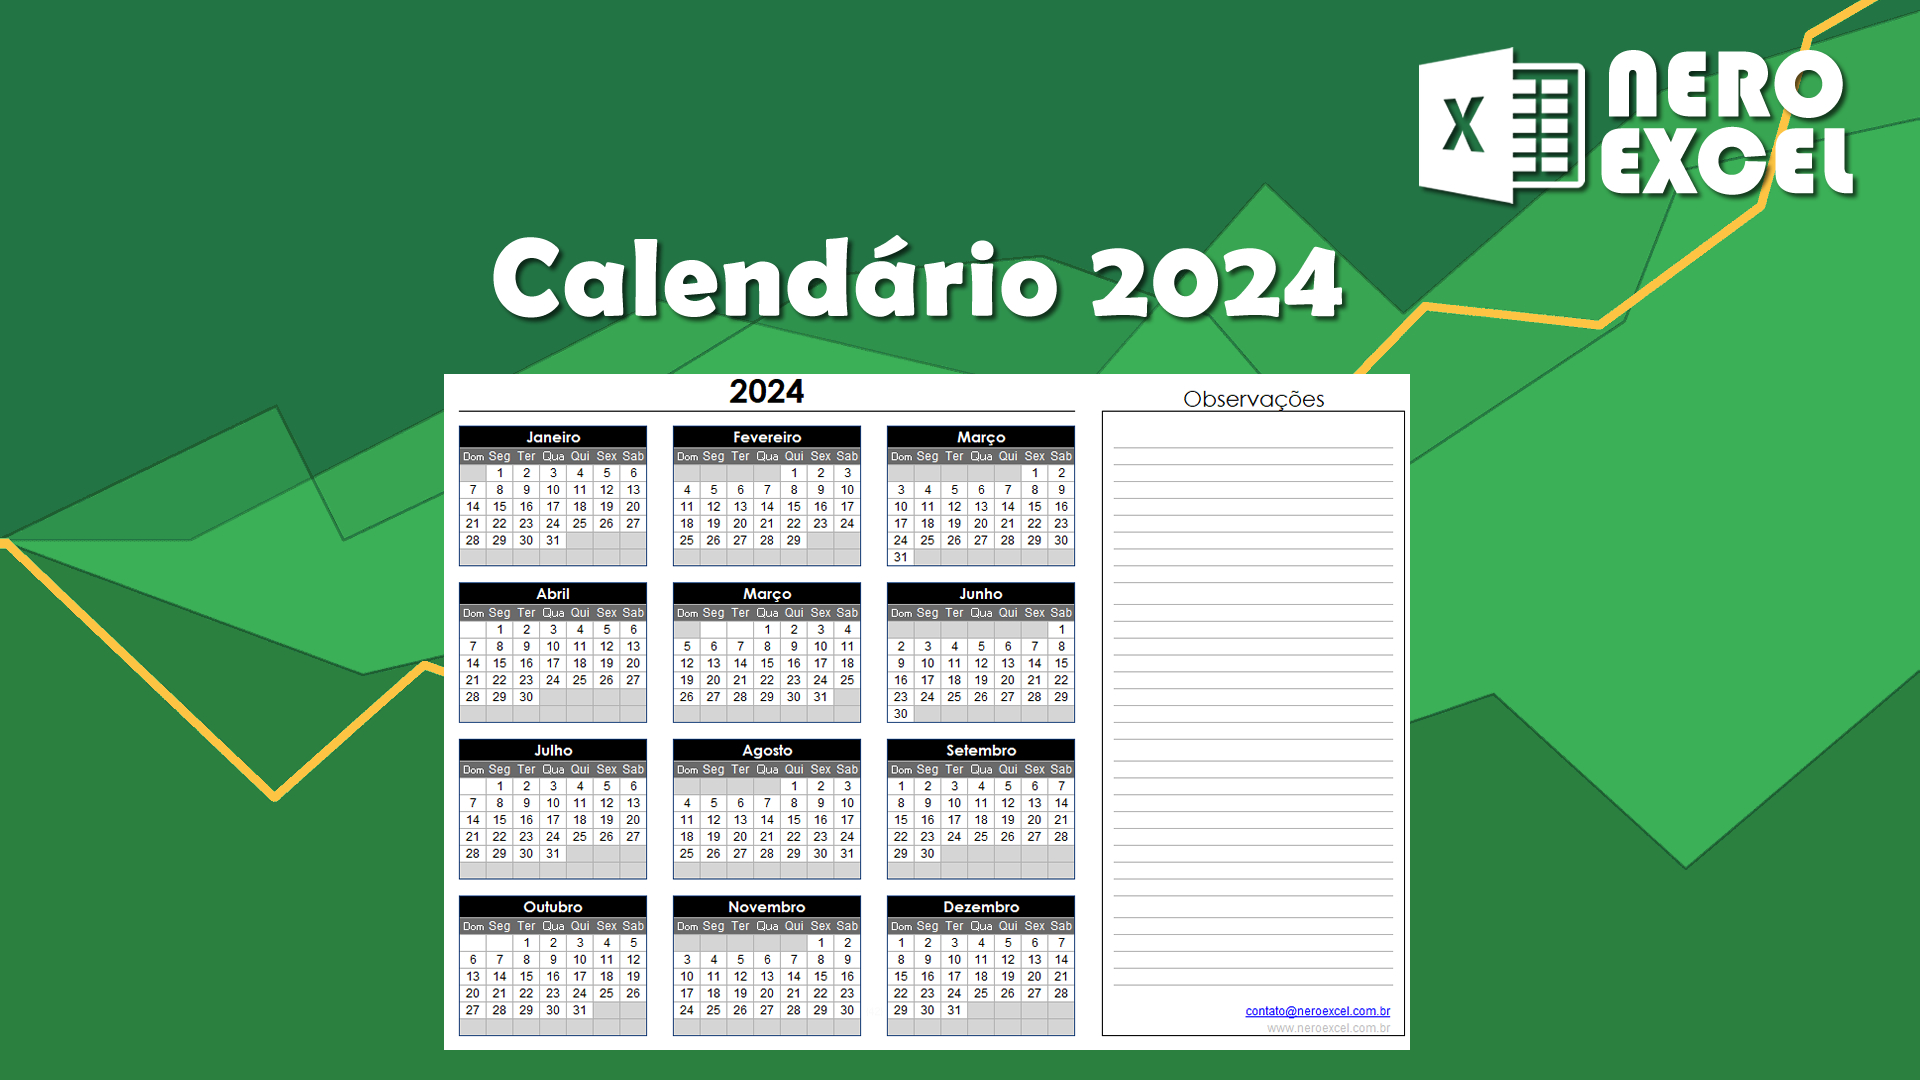 Calendário Excel 2024 Completo - Para download, editar e imprimir.